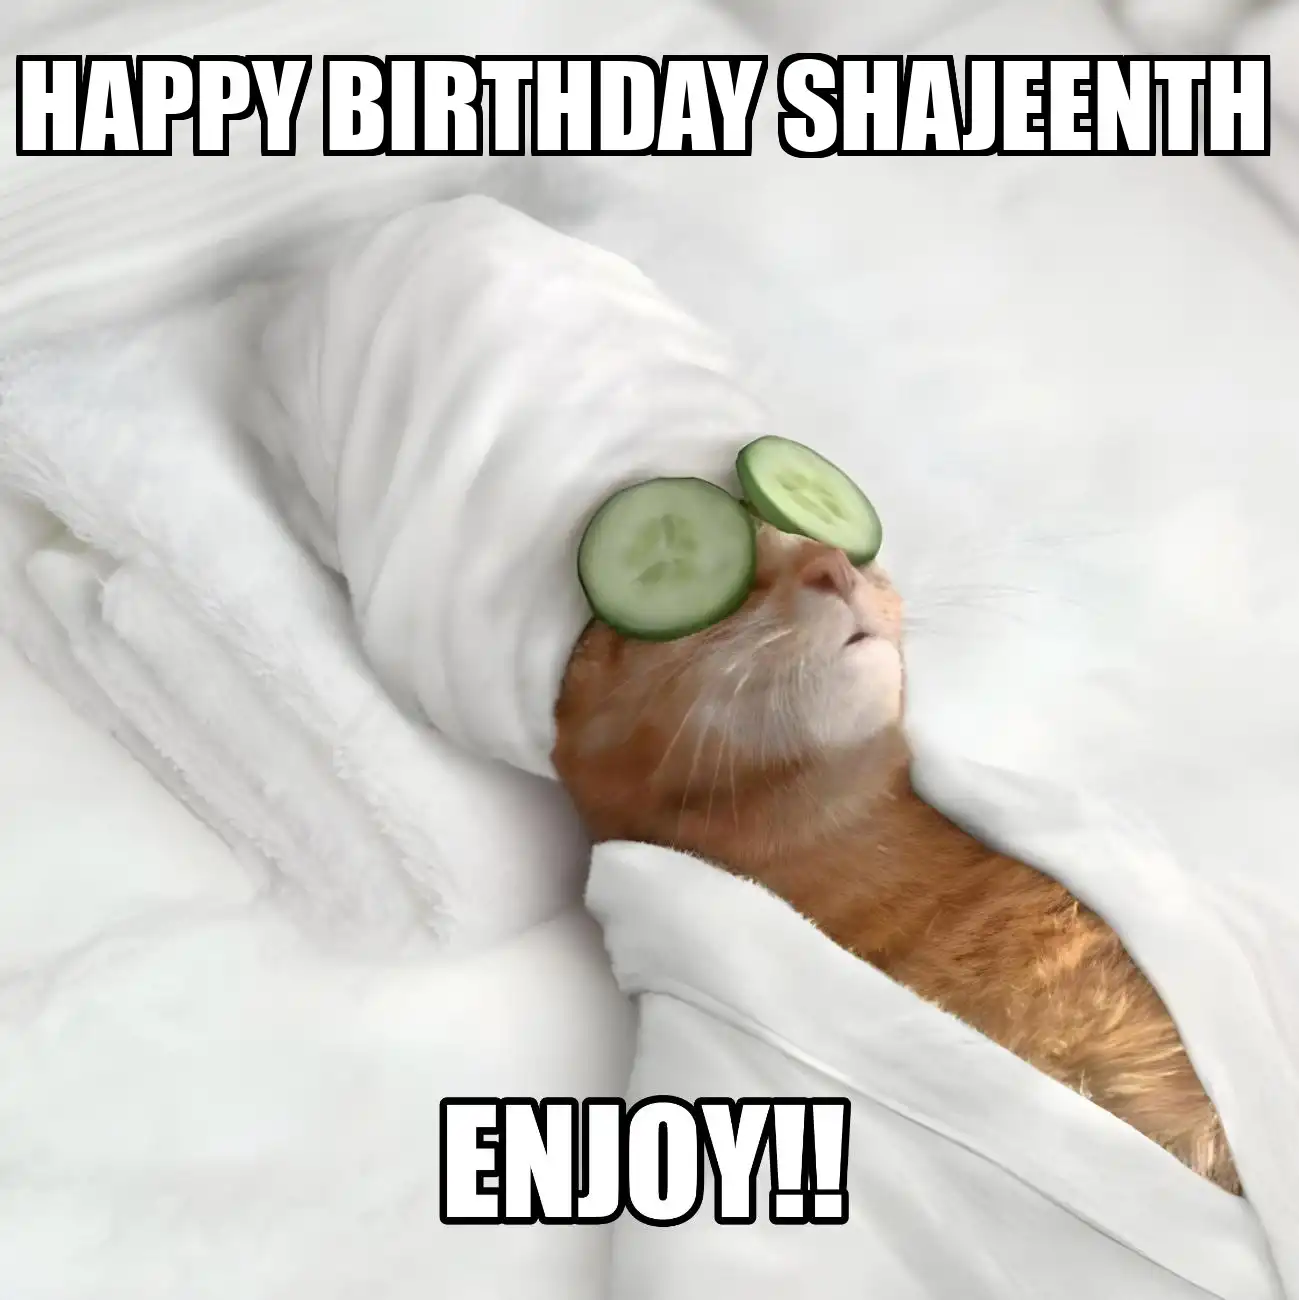 Happy Birthday Shajeenth Enjoy Cat Meme